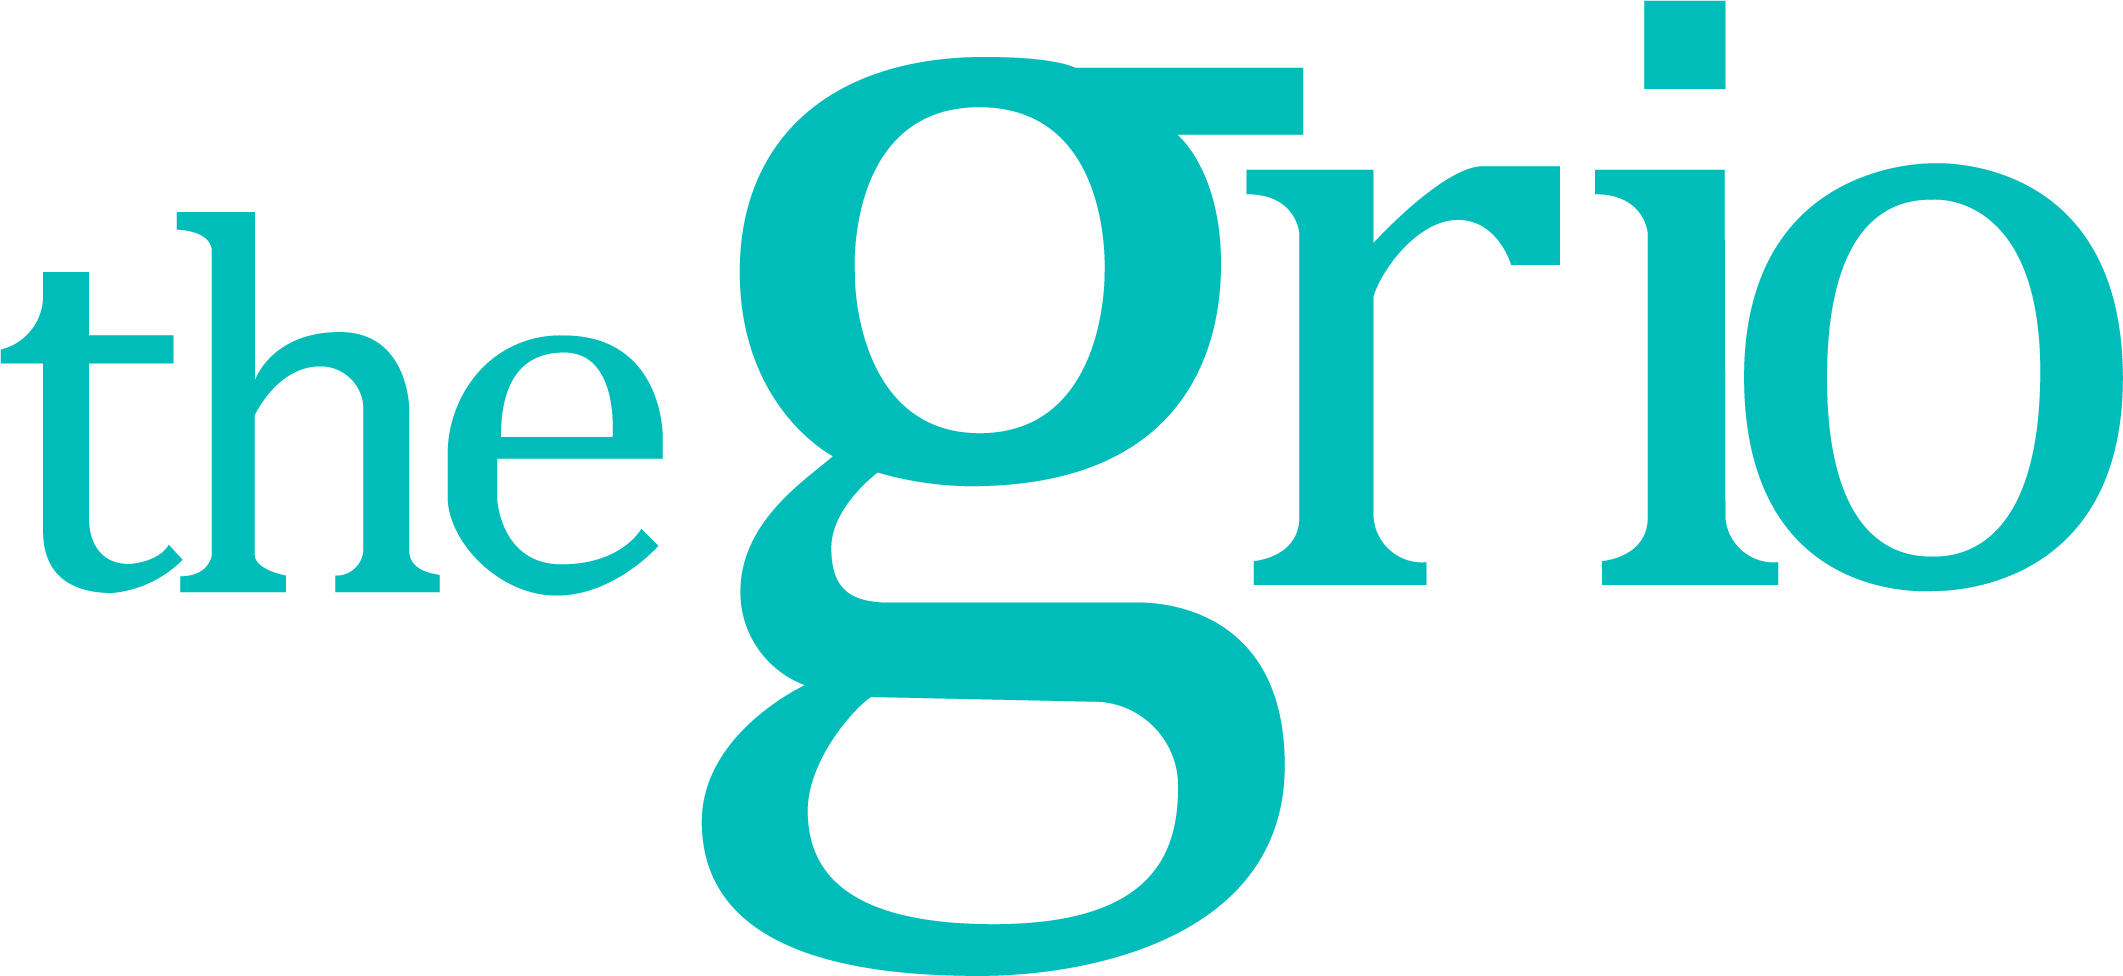 Large_Logo.png